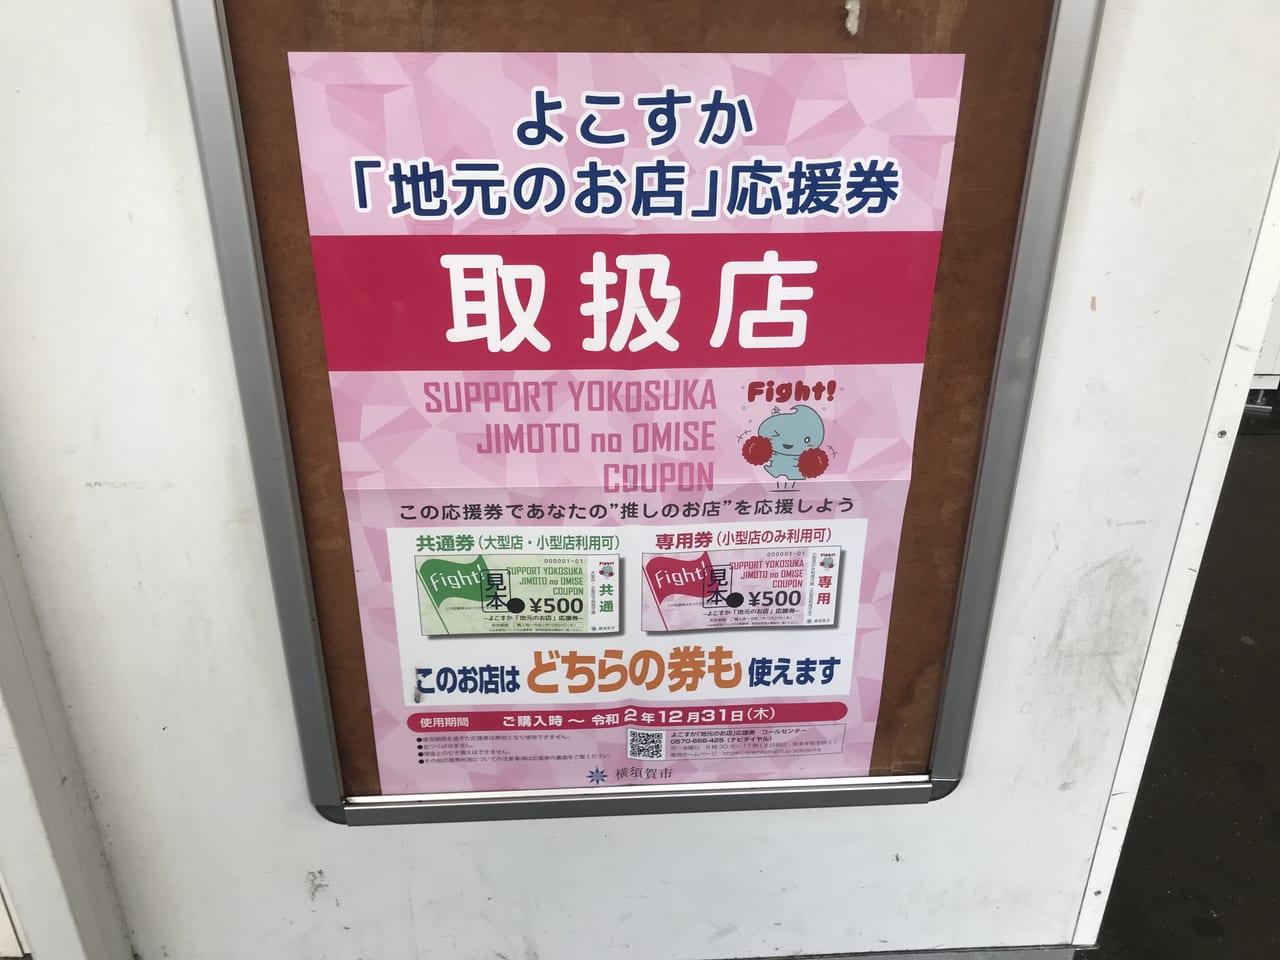 応援 券 横須賀